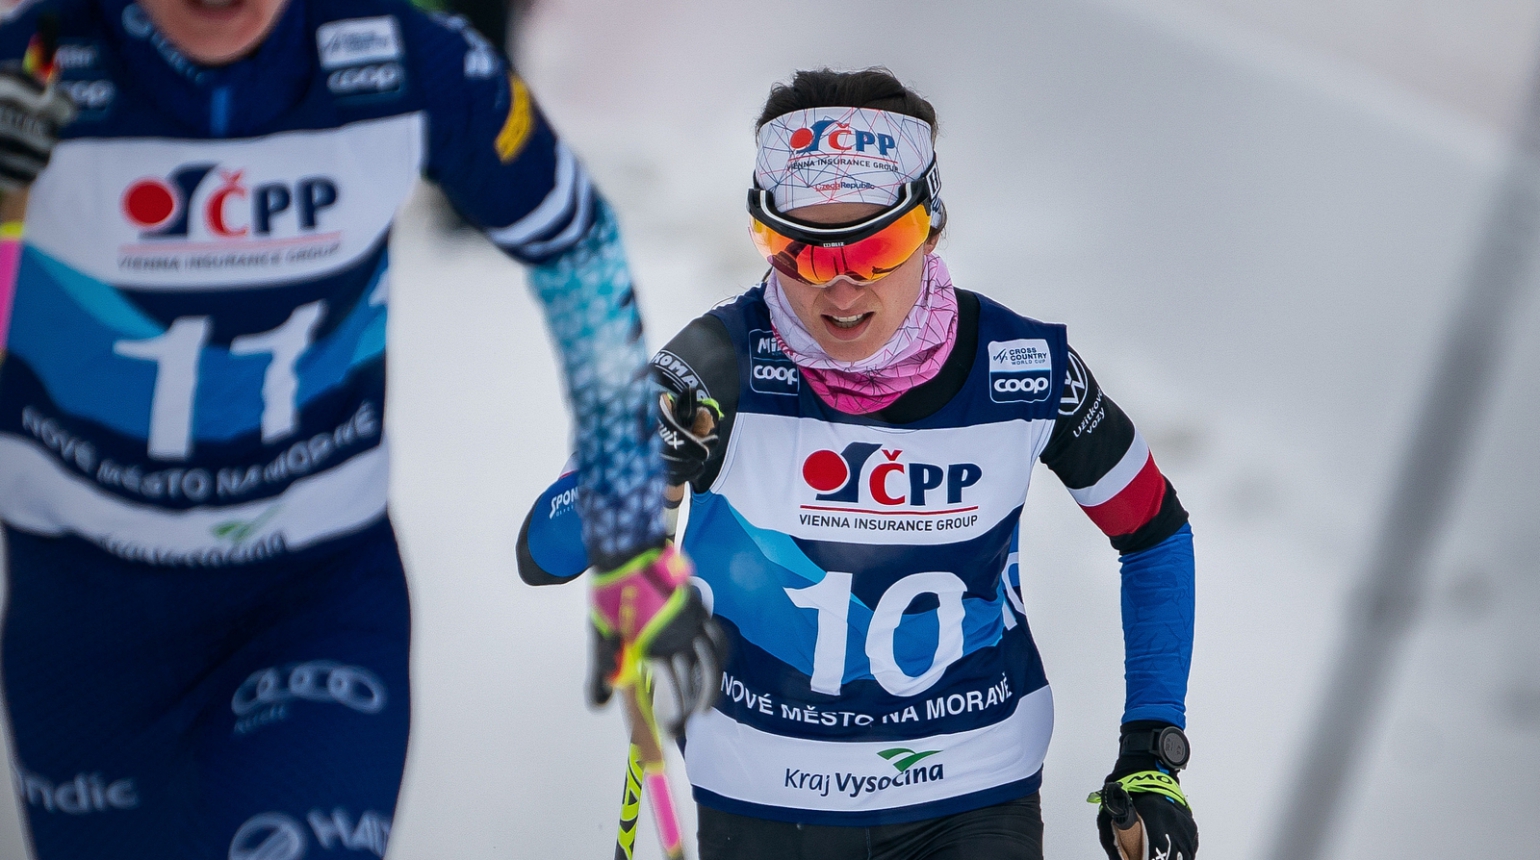 Razýmová si na desítce ve Val Müstair doběhla pro 14. místo. V pořadí Tour de Ski se posunula na 16. příčku